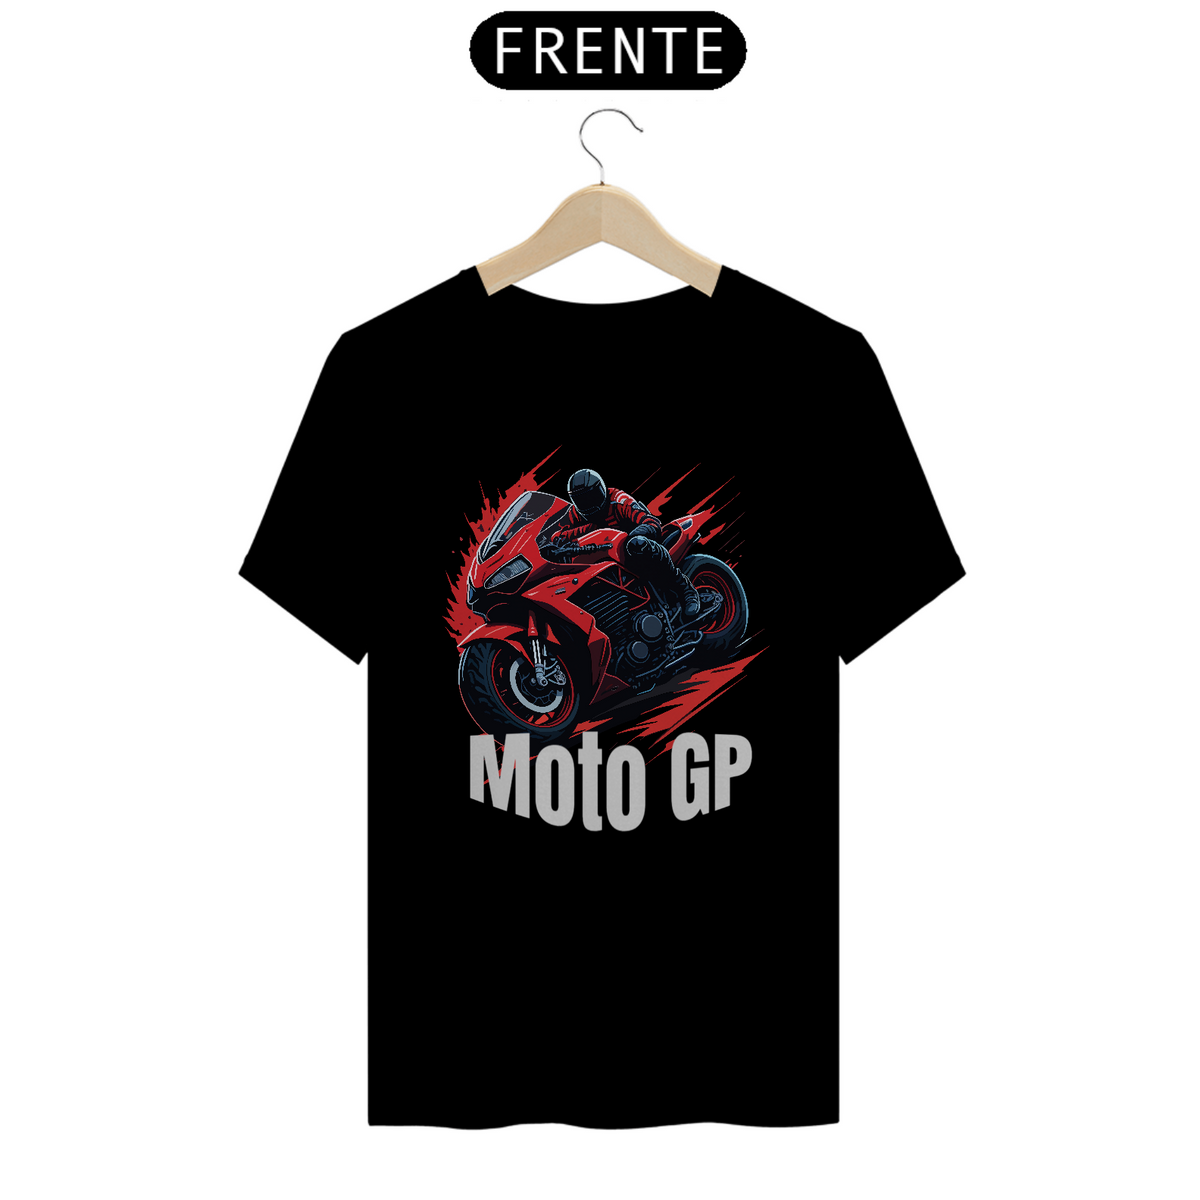 Nome do produto: Moto GP